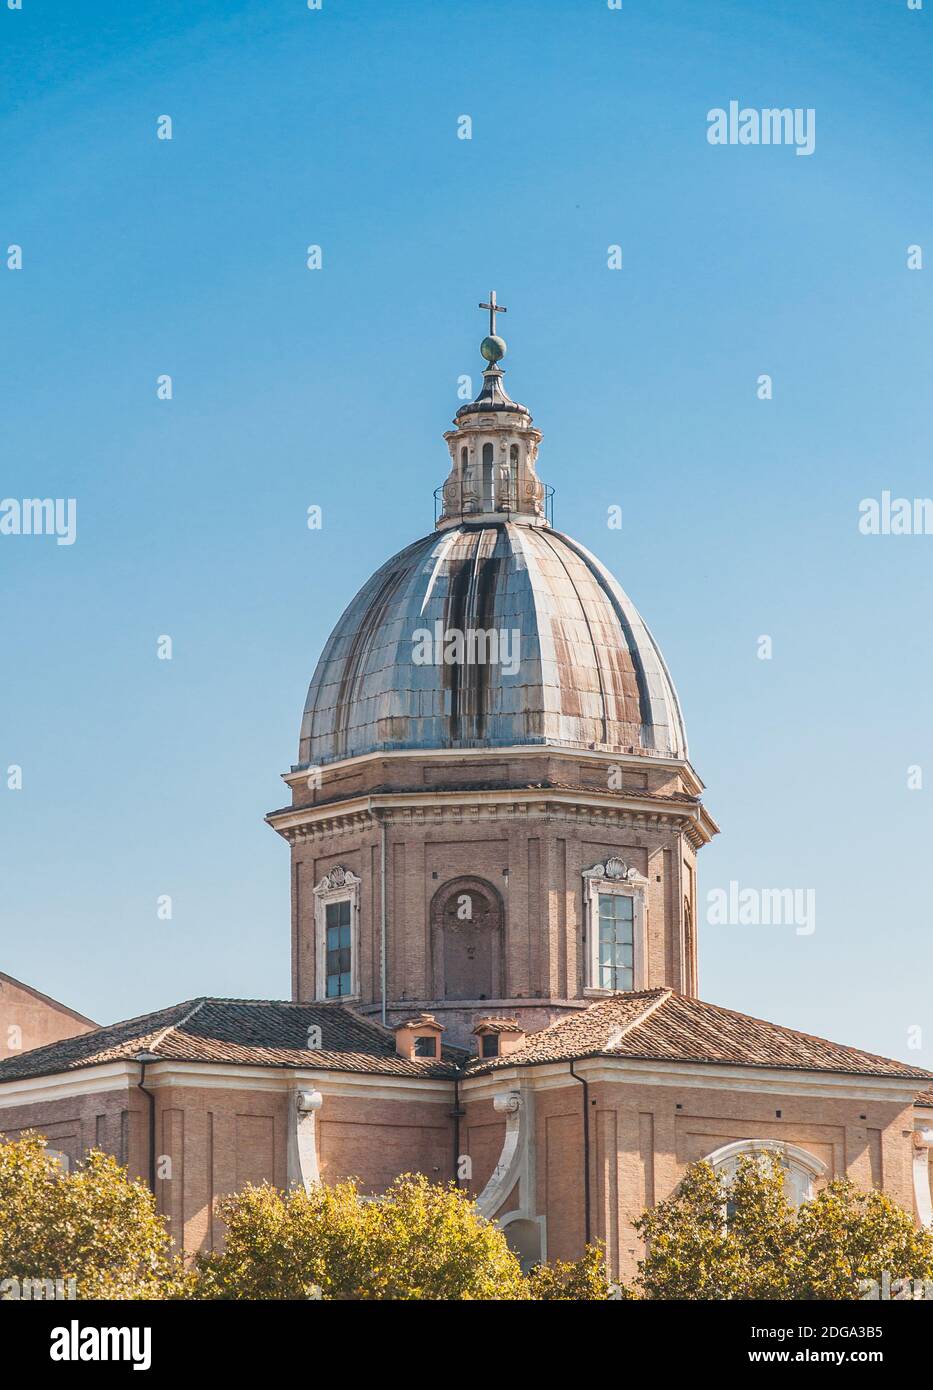 Catholic Church in Rome Italy Stock Photo